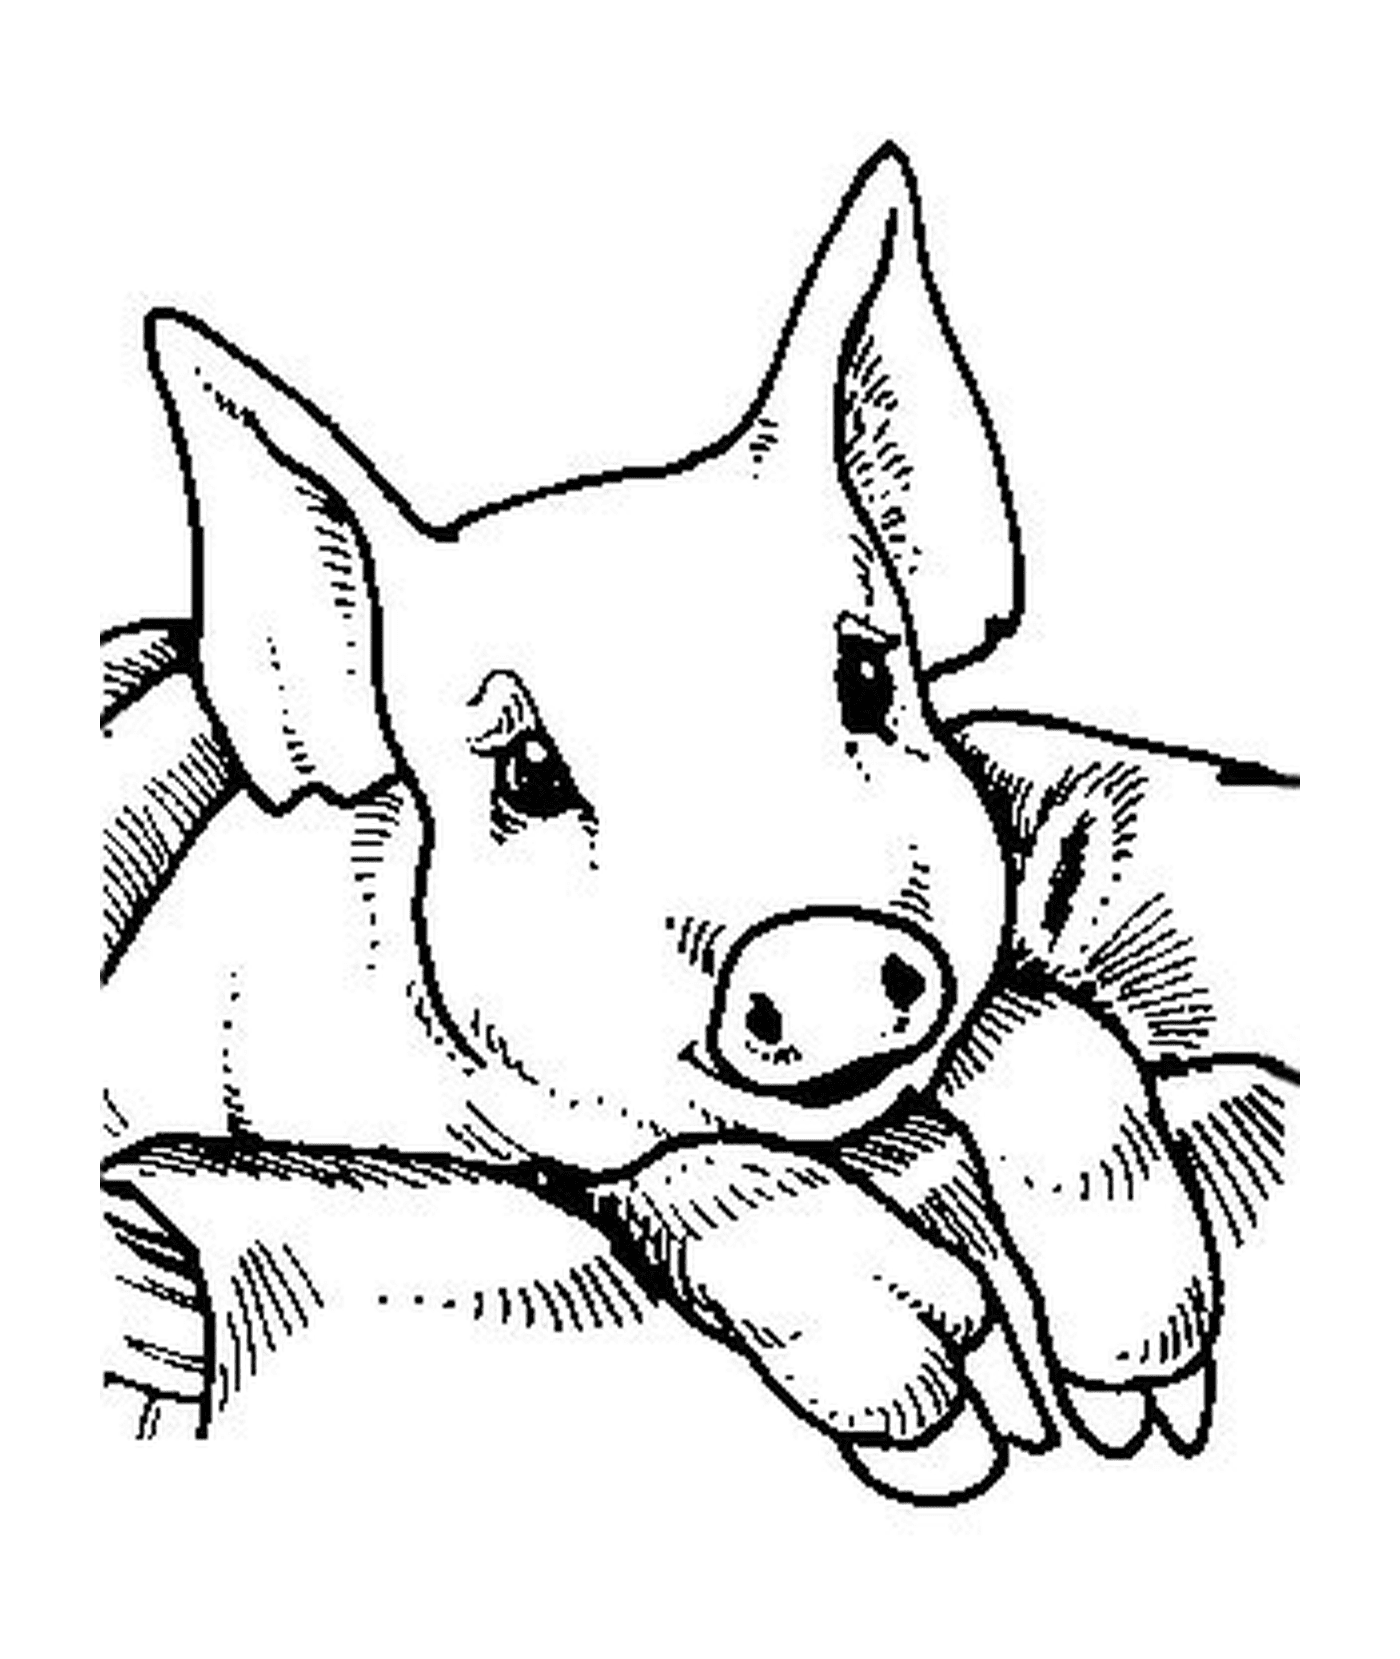  一个坐在毯子上的猪宝宝 